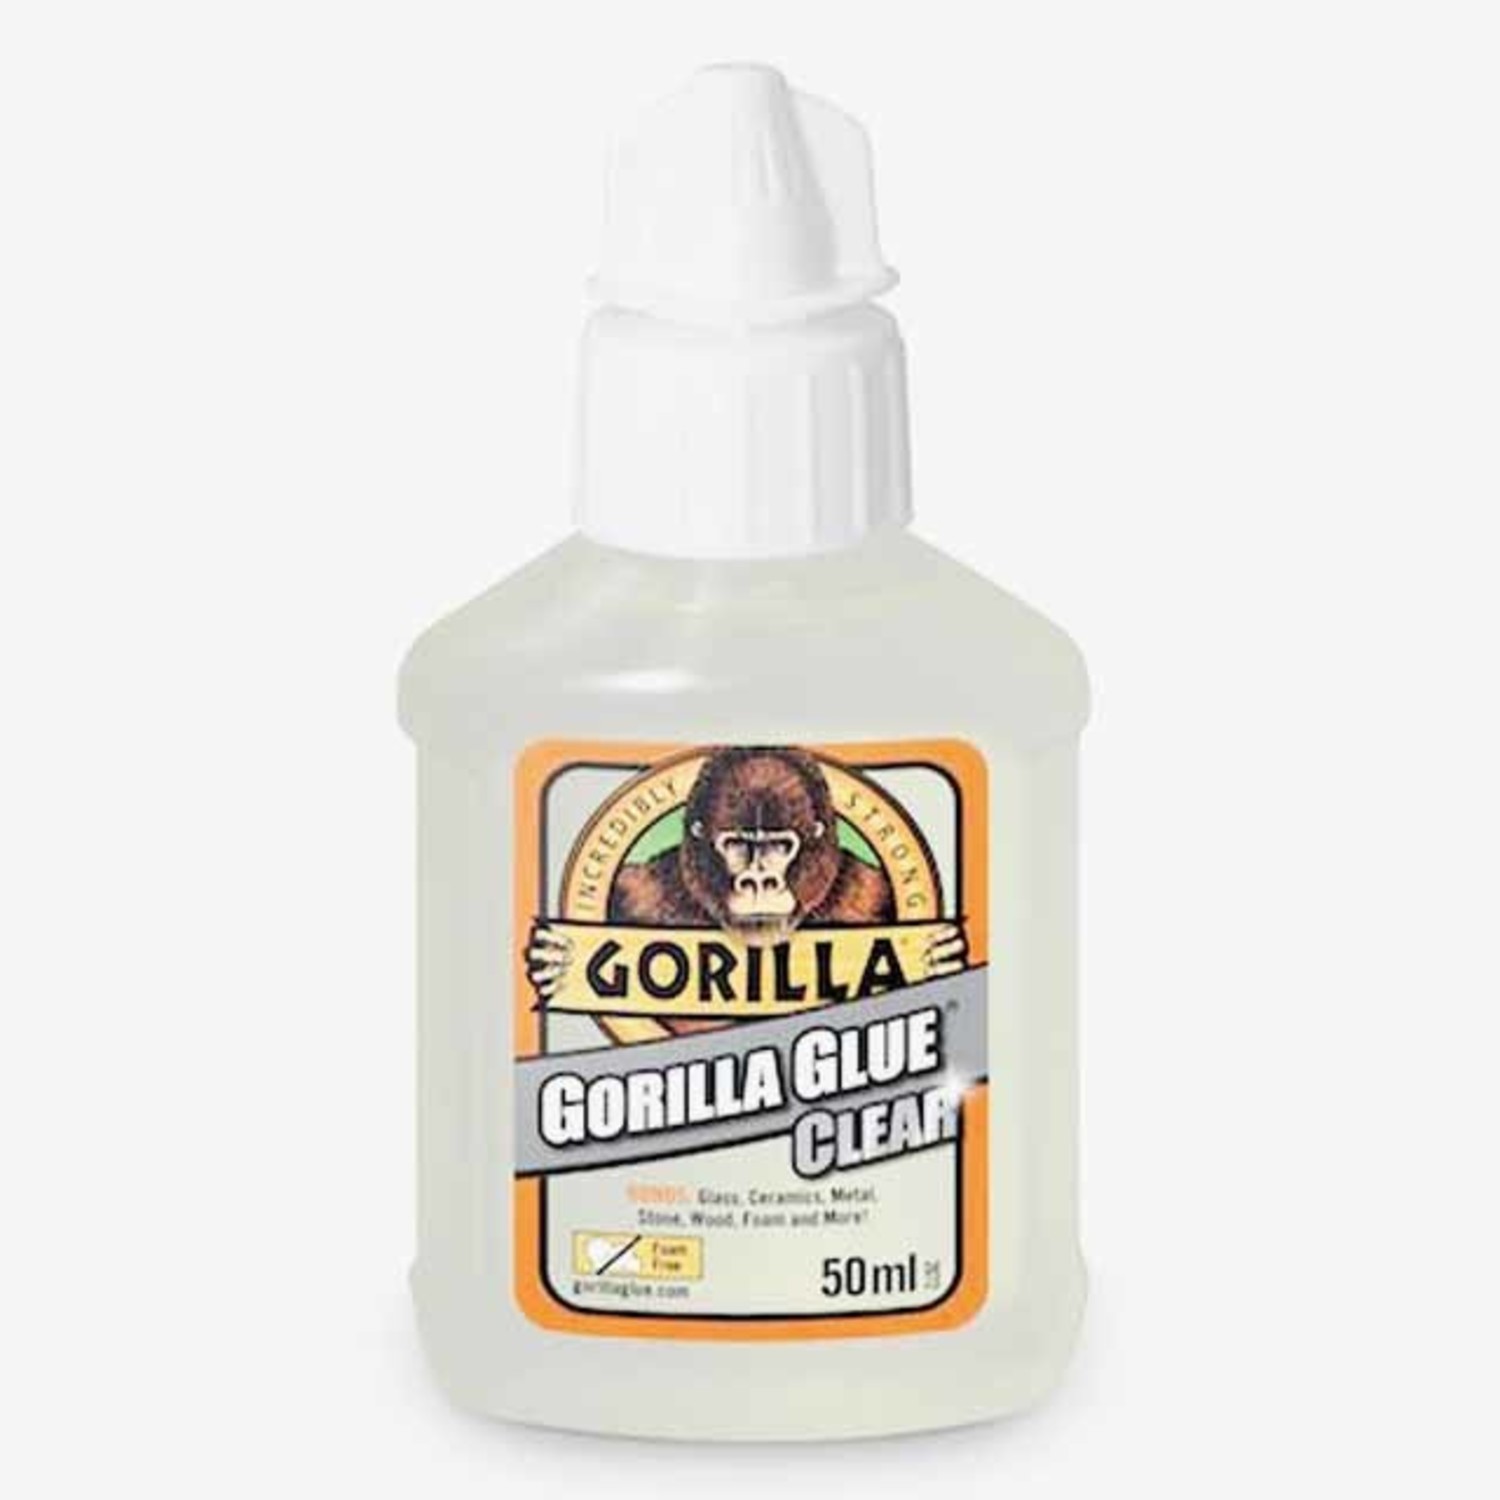 definitief Stuwkracht halen Gorilla GLue Clear 50ml| Messen maken | Lijm - Smederij Atelier Alkmaar